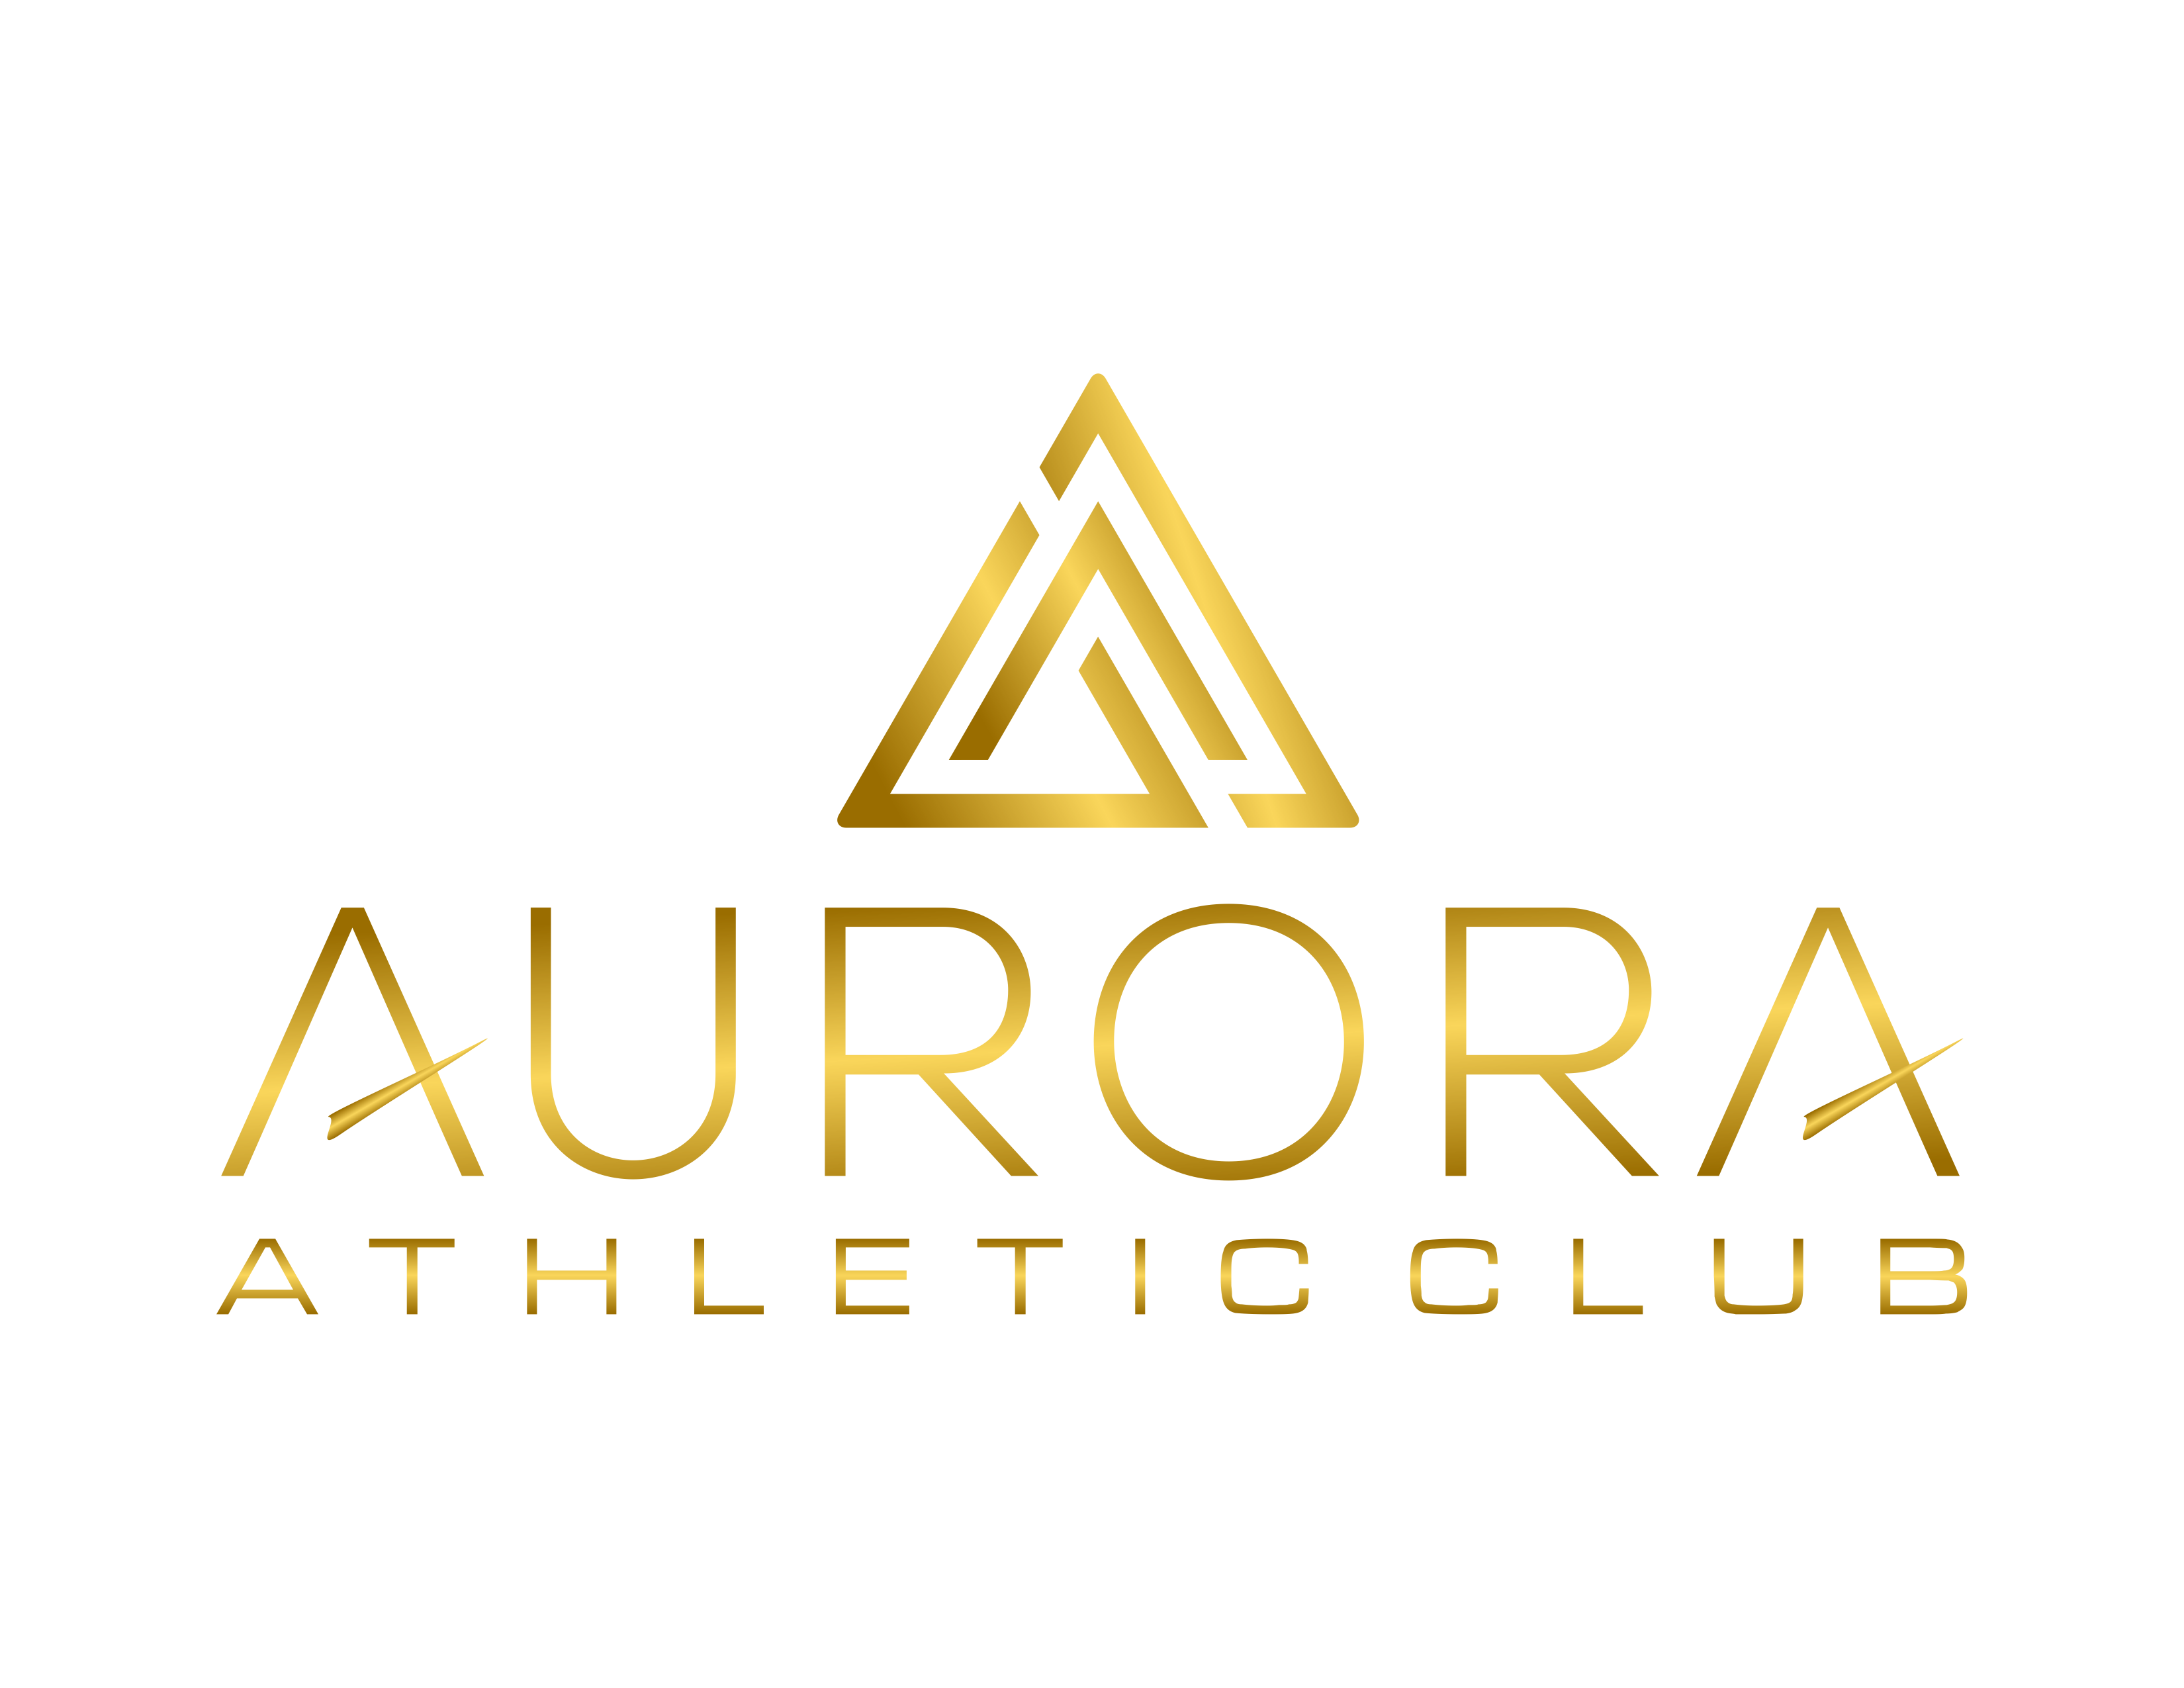 Aurora Athletic Club - Explore Aurora